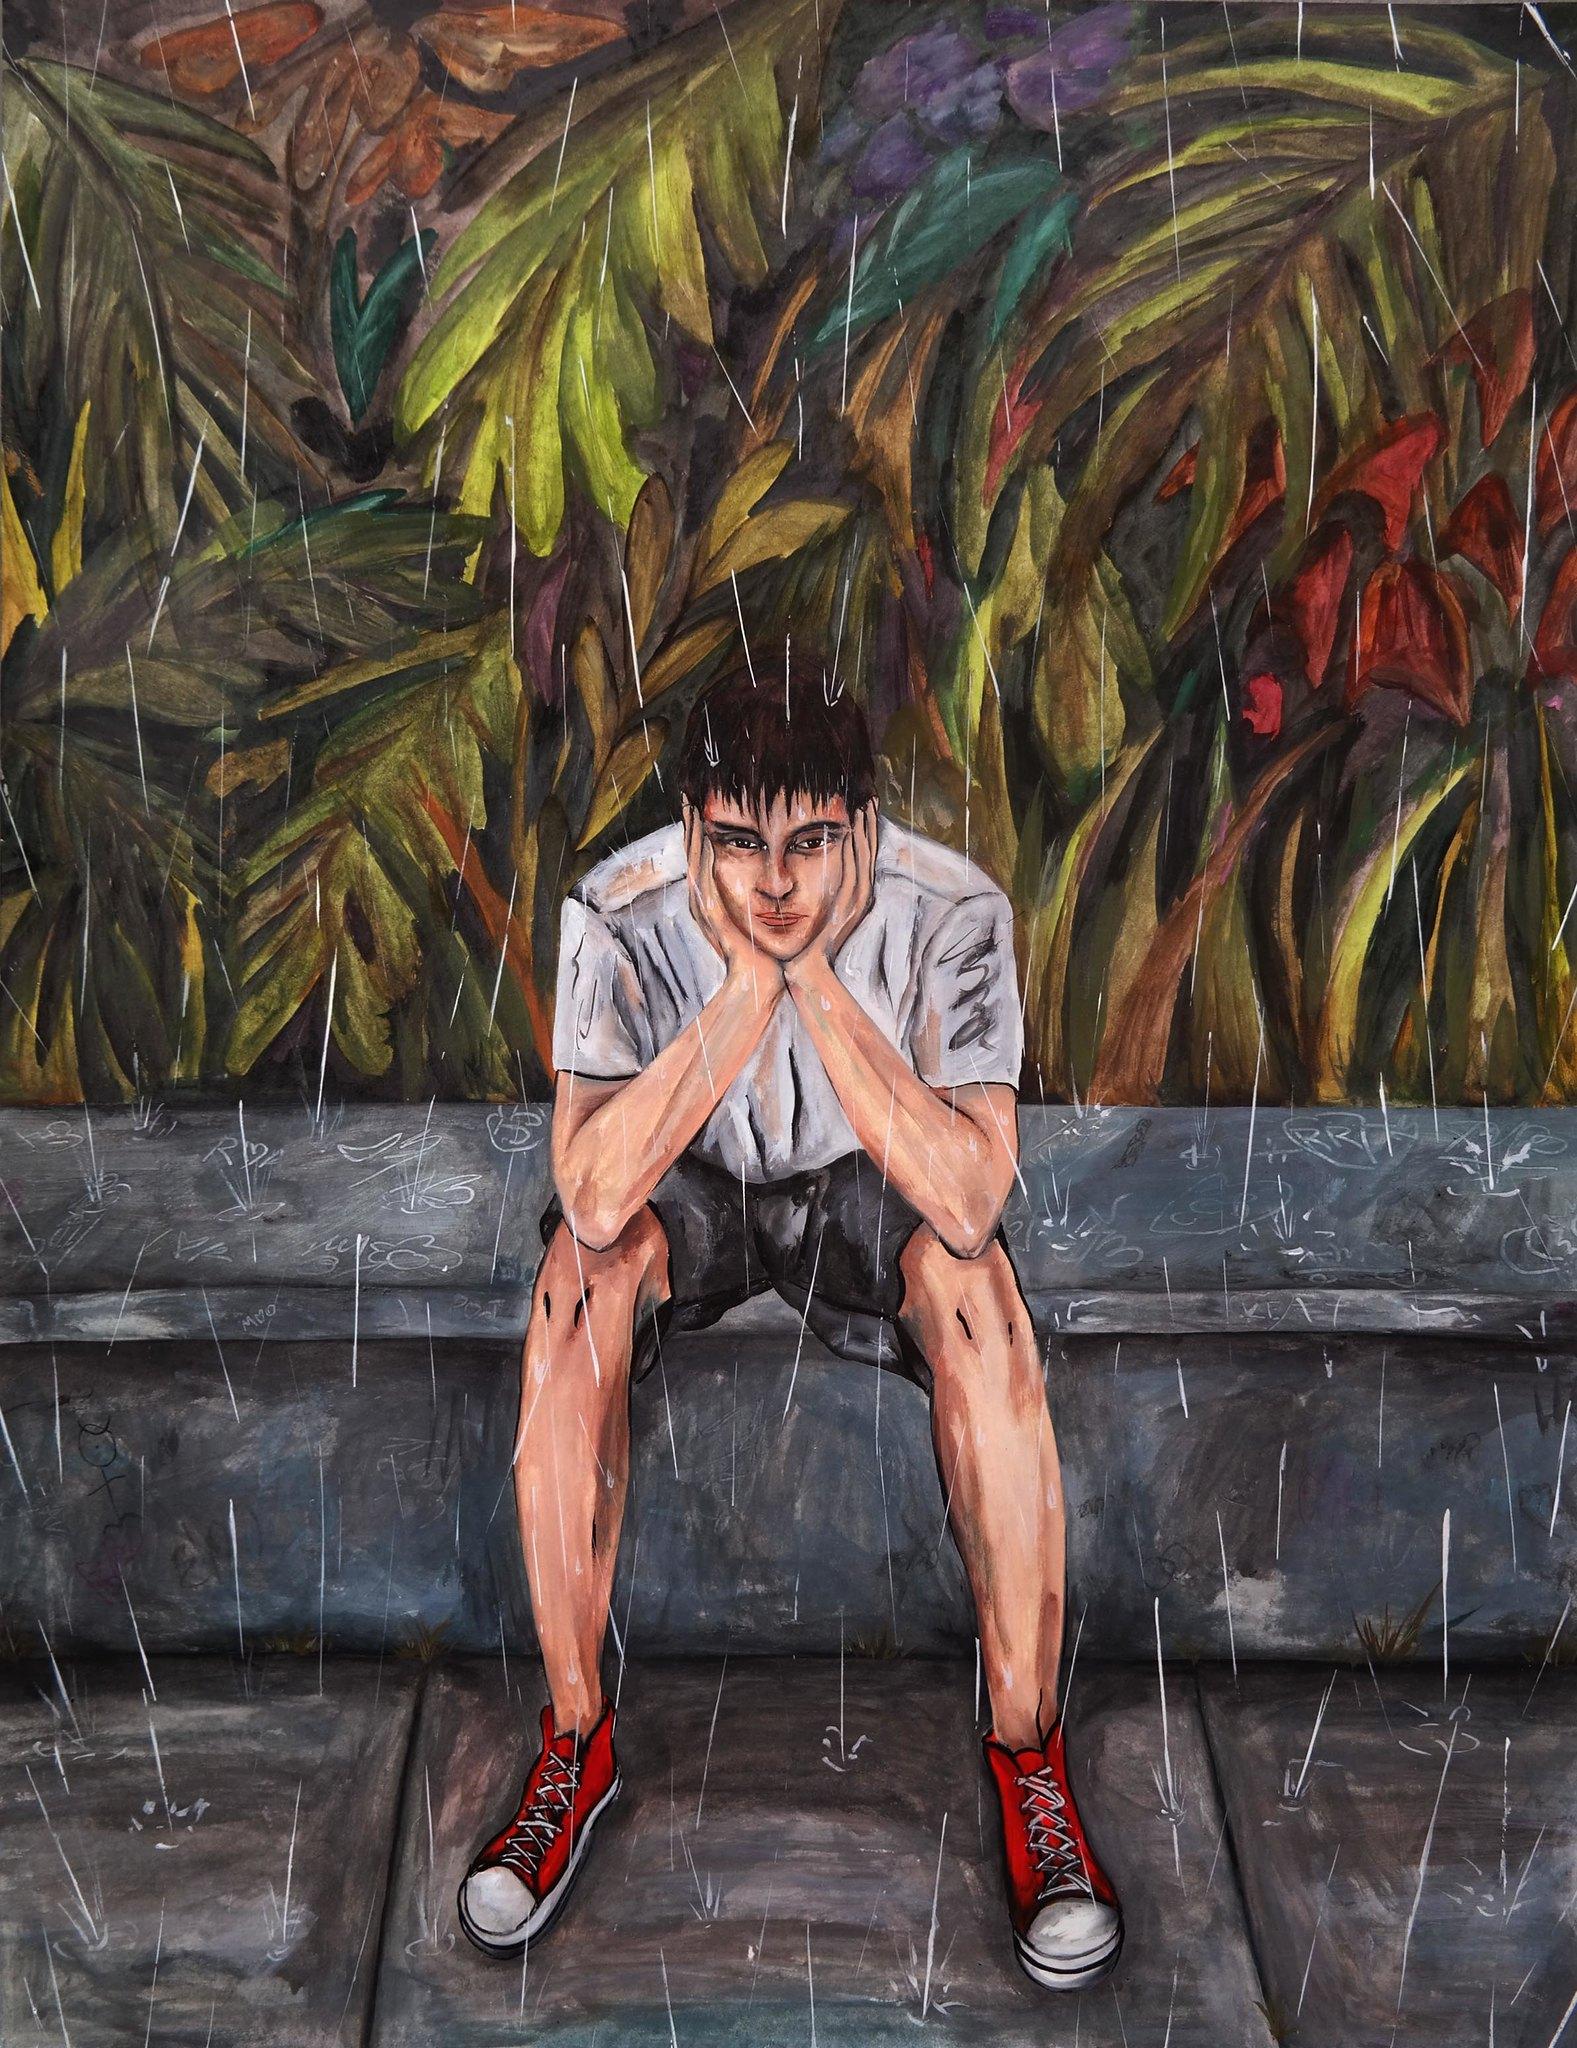 Ramonn Vieitez de Lima Portrait Painting - The Rain, Figurative Painting